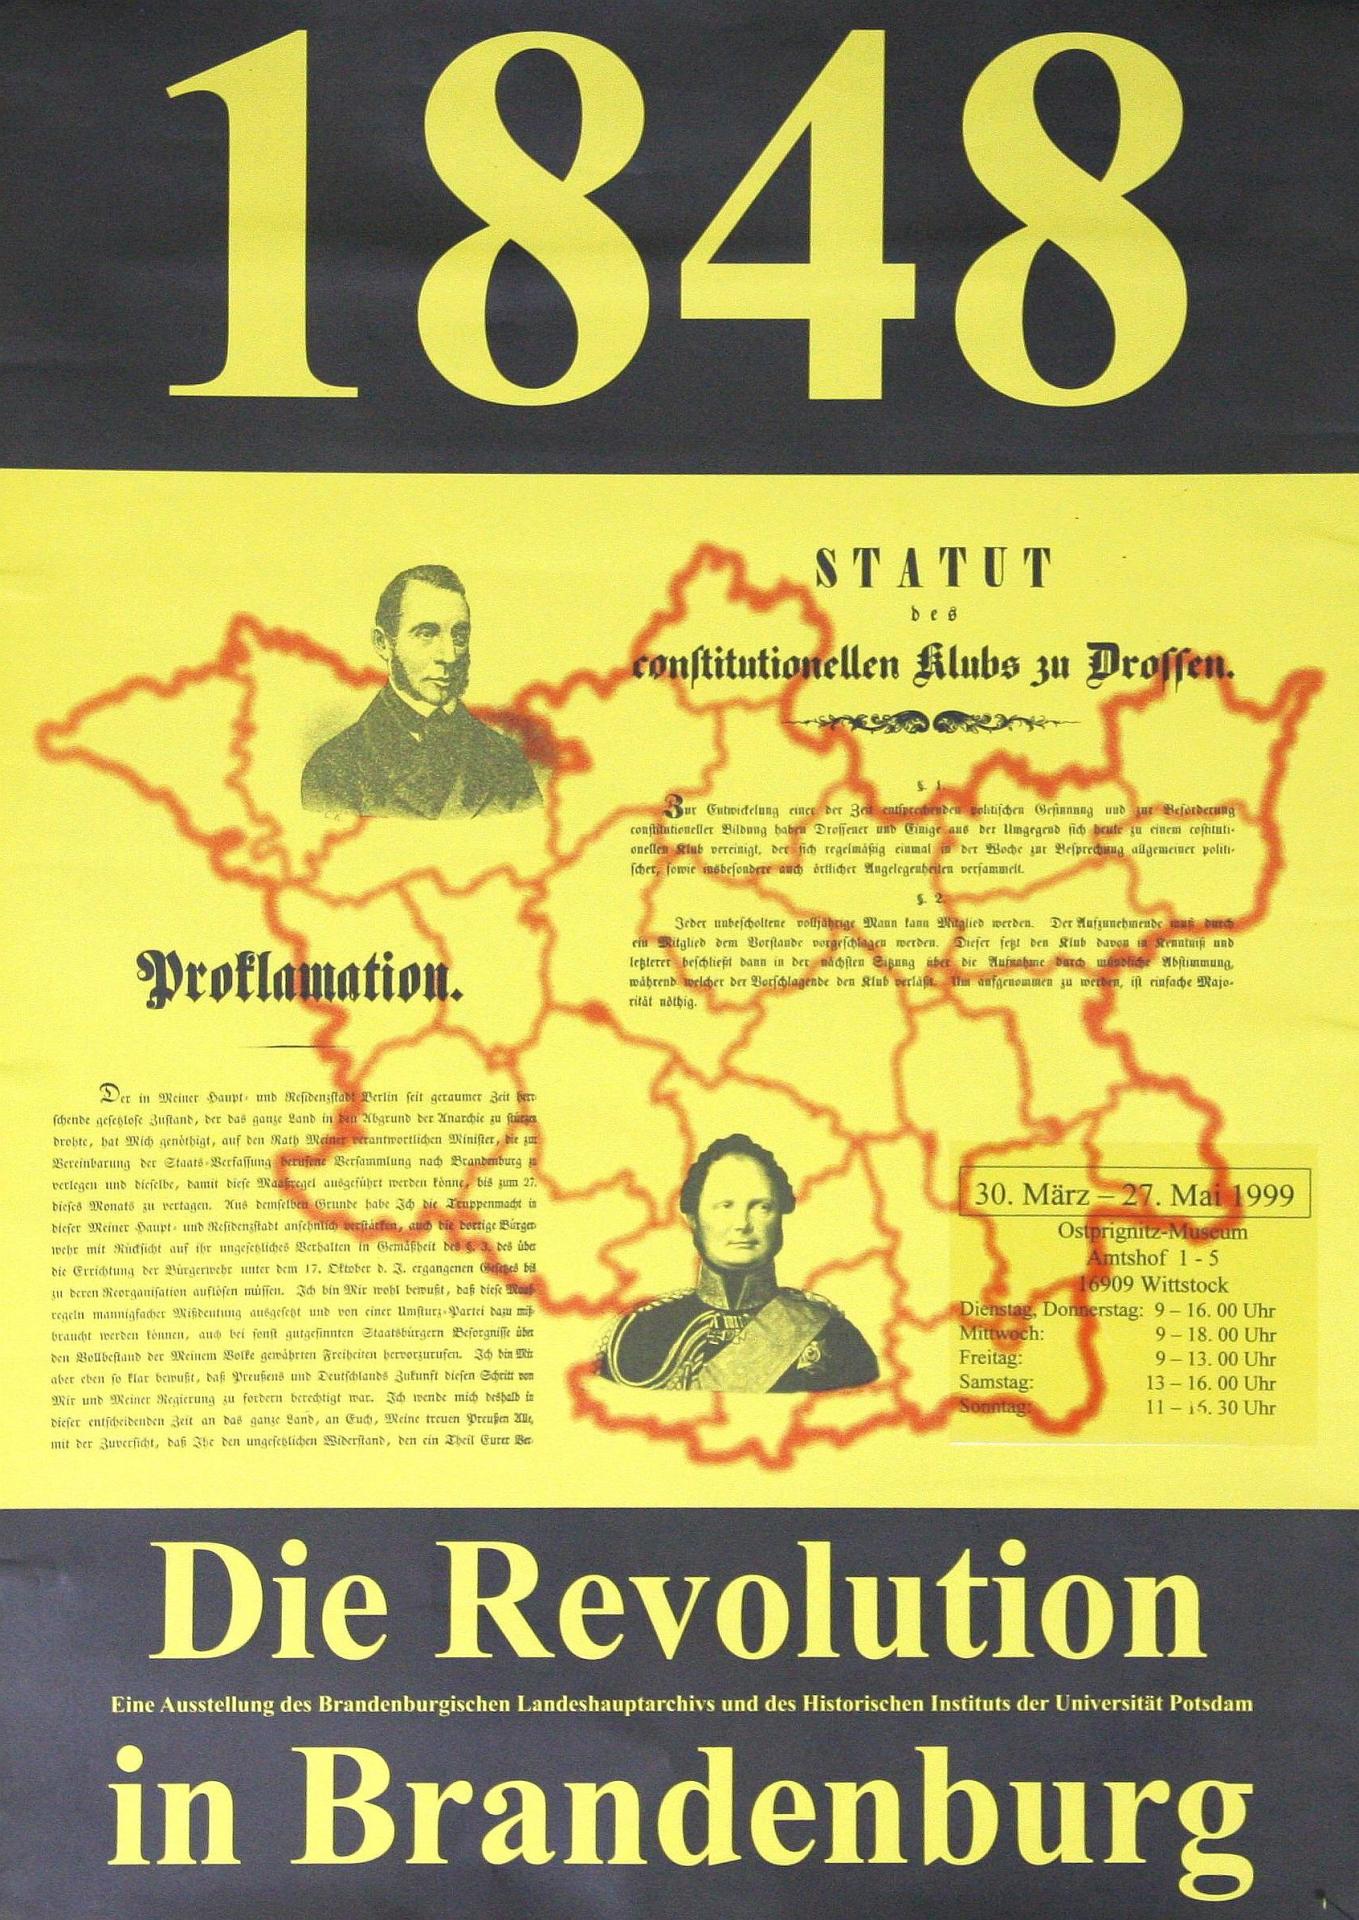 1999 Die Revolution in Brandenburg - Eine Ausstellung des brandenburgischen Landeshauptarchivs und des Historischen Instituts der Universität Potsdam